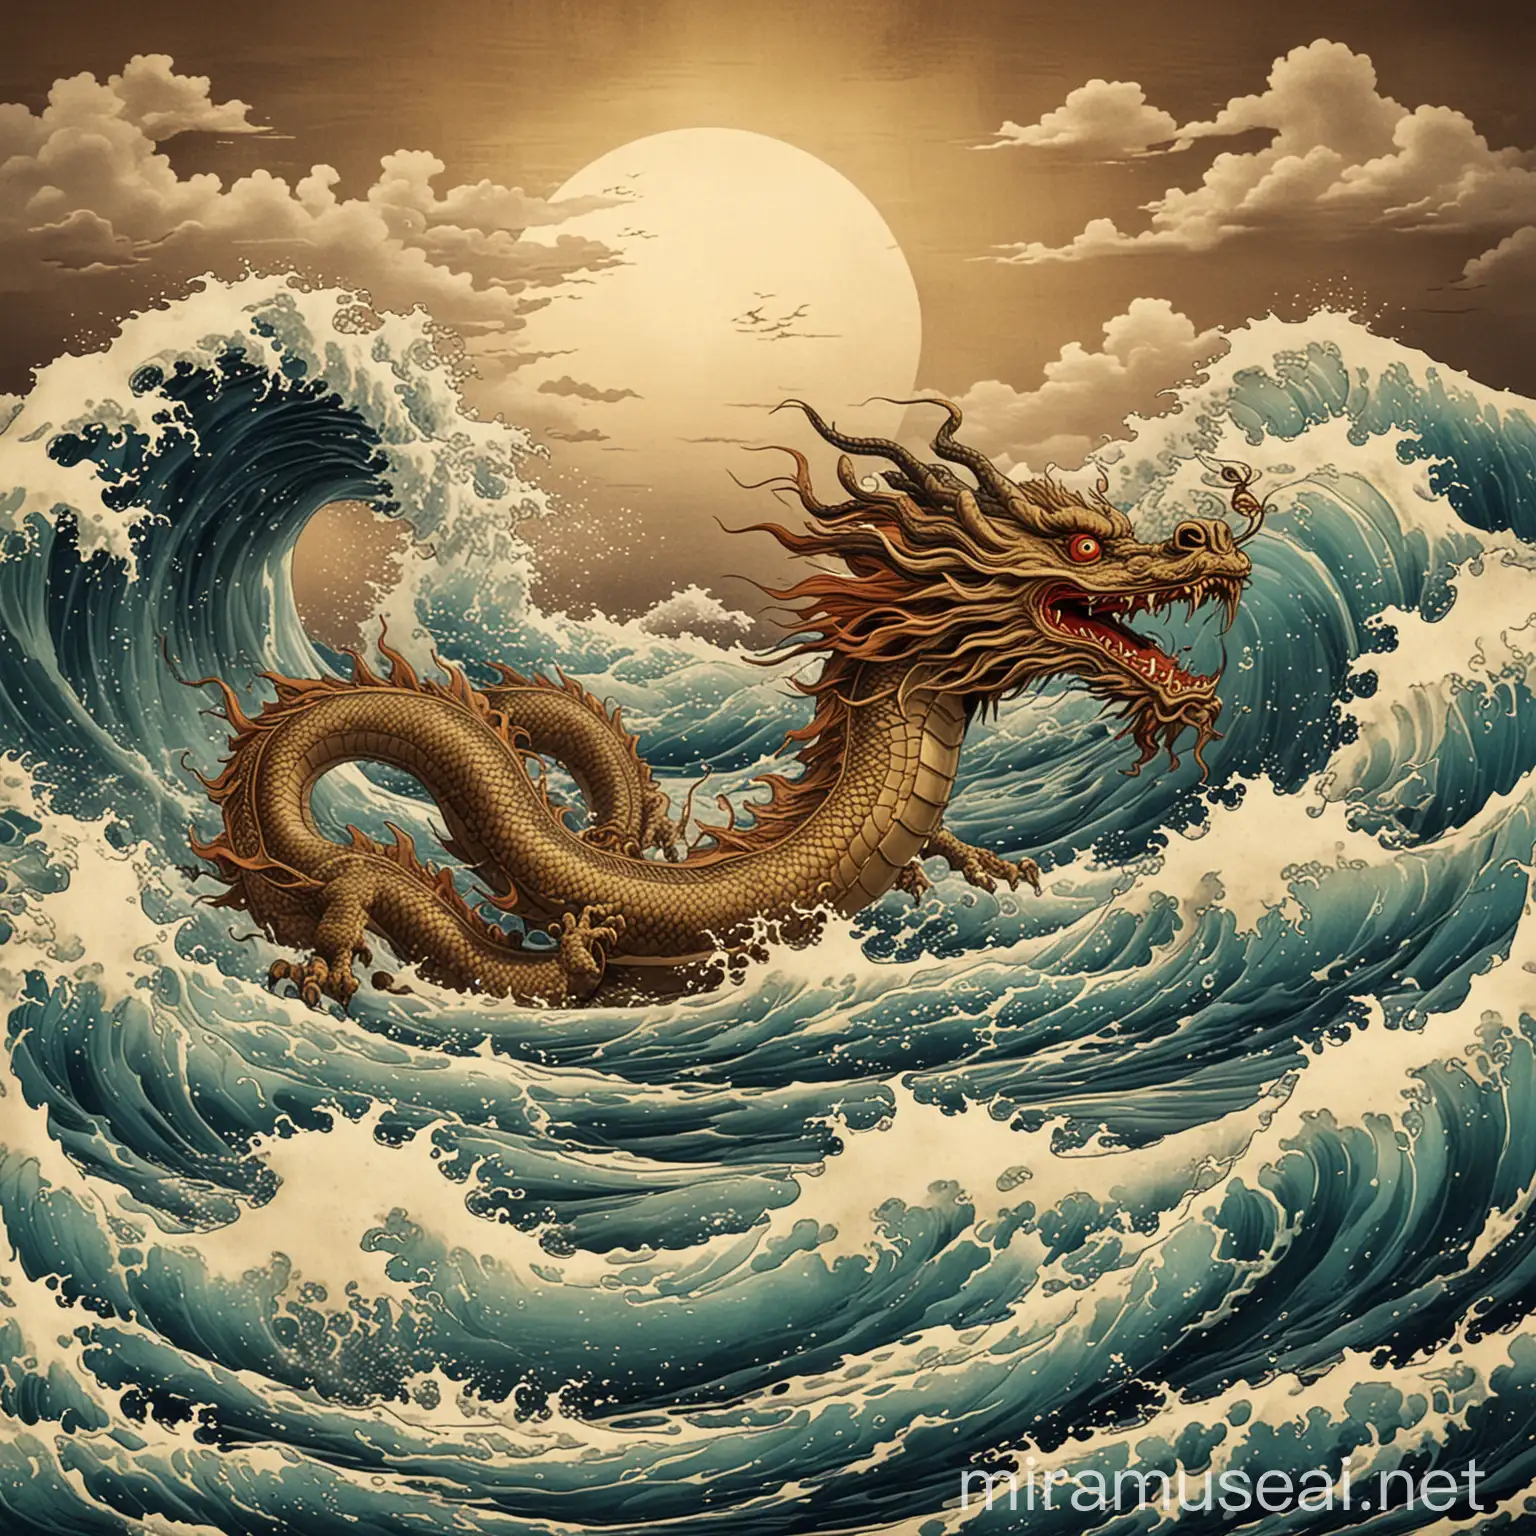 Antik chinese dragon flying above kanagawa waves